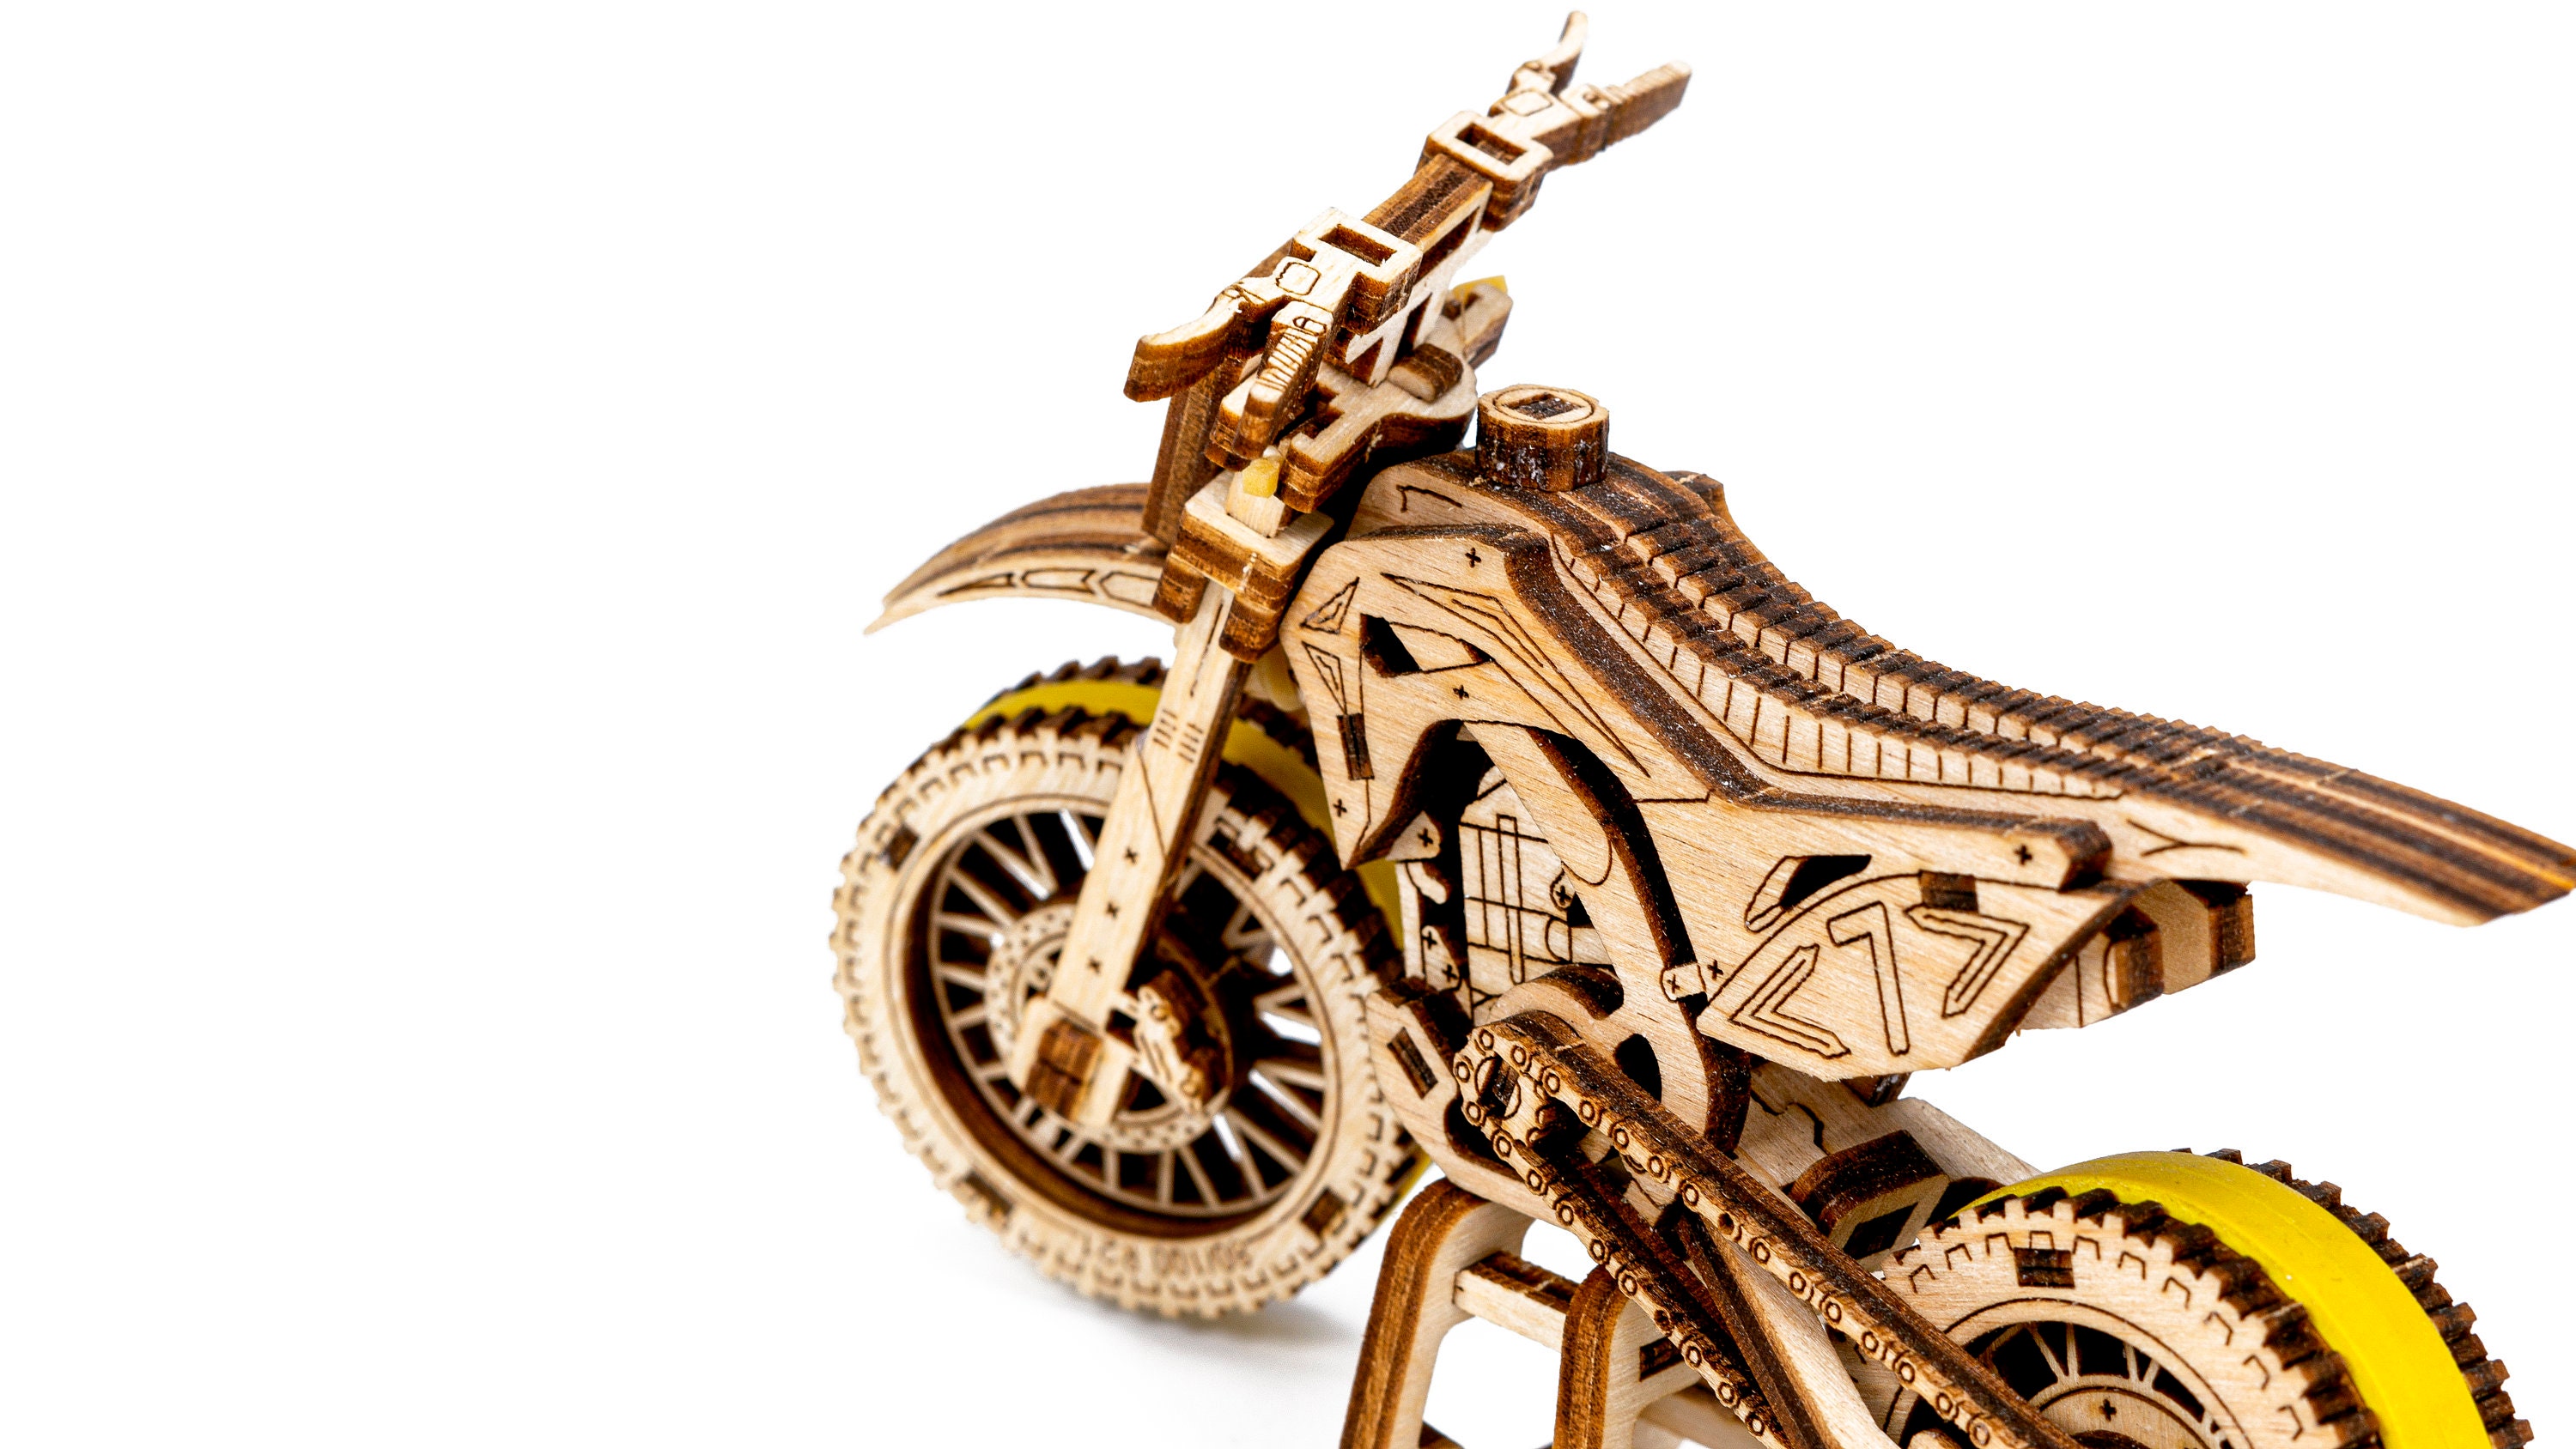 Puzzle Moto 3D Motocross Kit modello in legno per adulti da costruire Kit  di costruzione modello moto Adulti Uomini Donne & Ragazzi 14 -  Italia